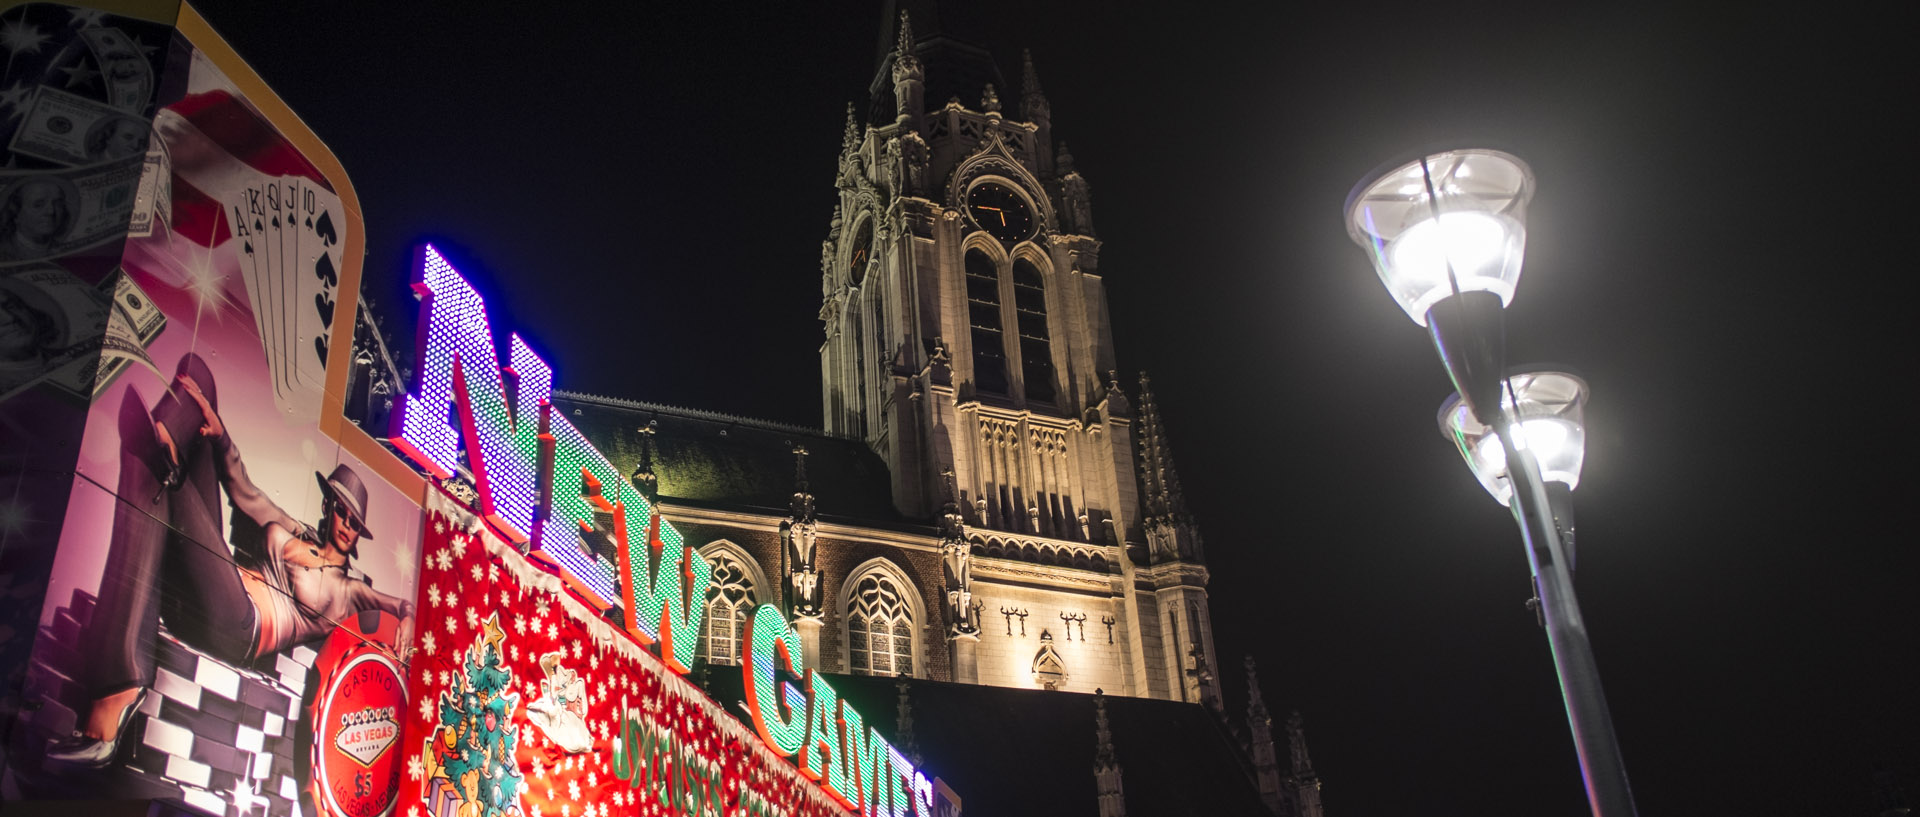 Lundi 15 décembre 2014, 17:45, place de la République, Tourcoing